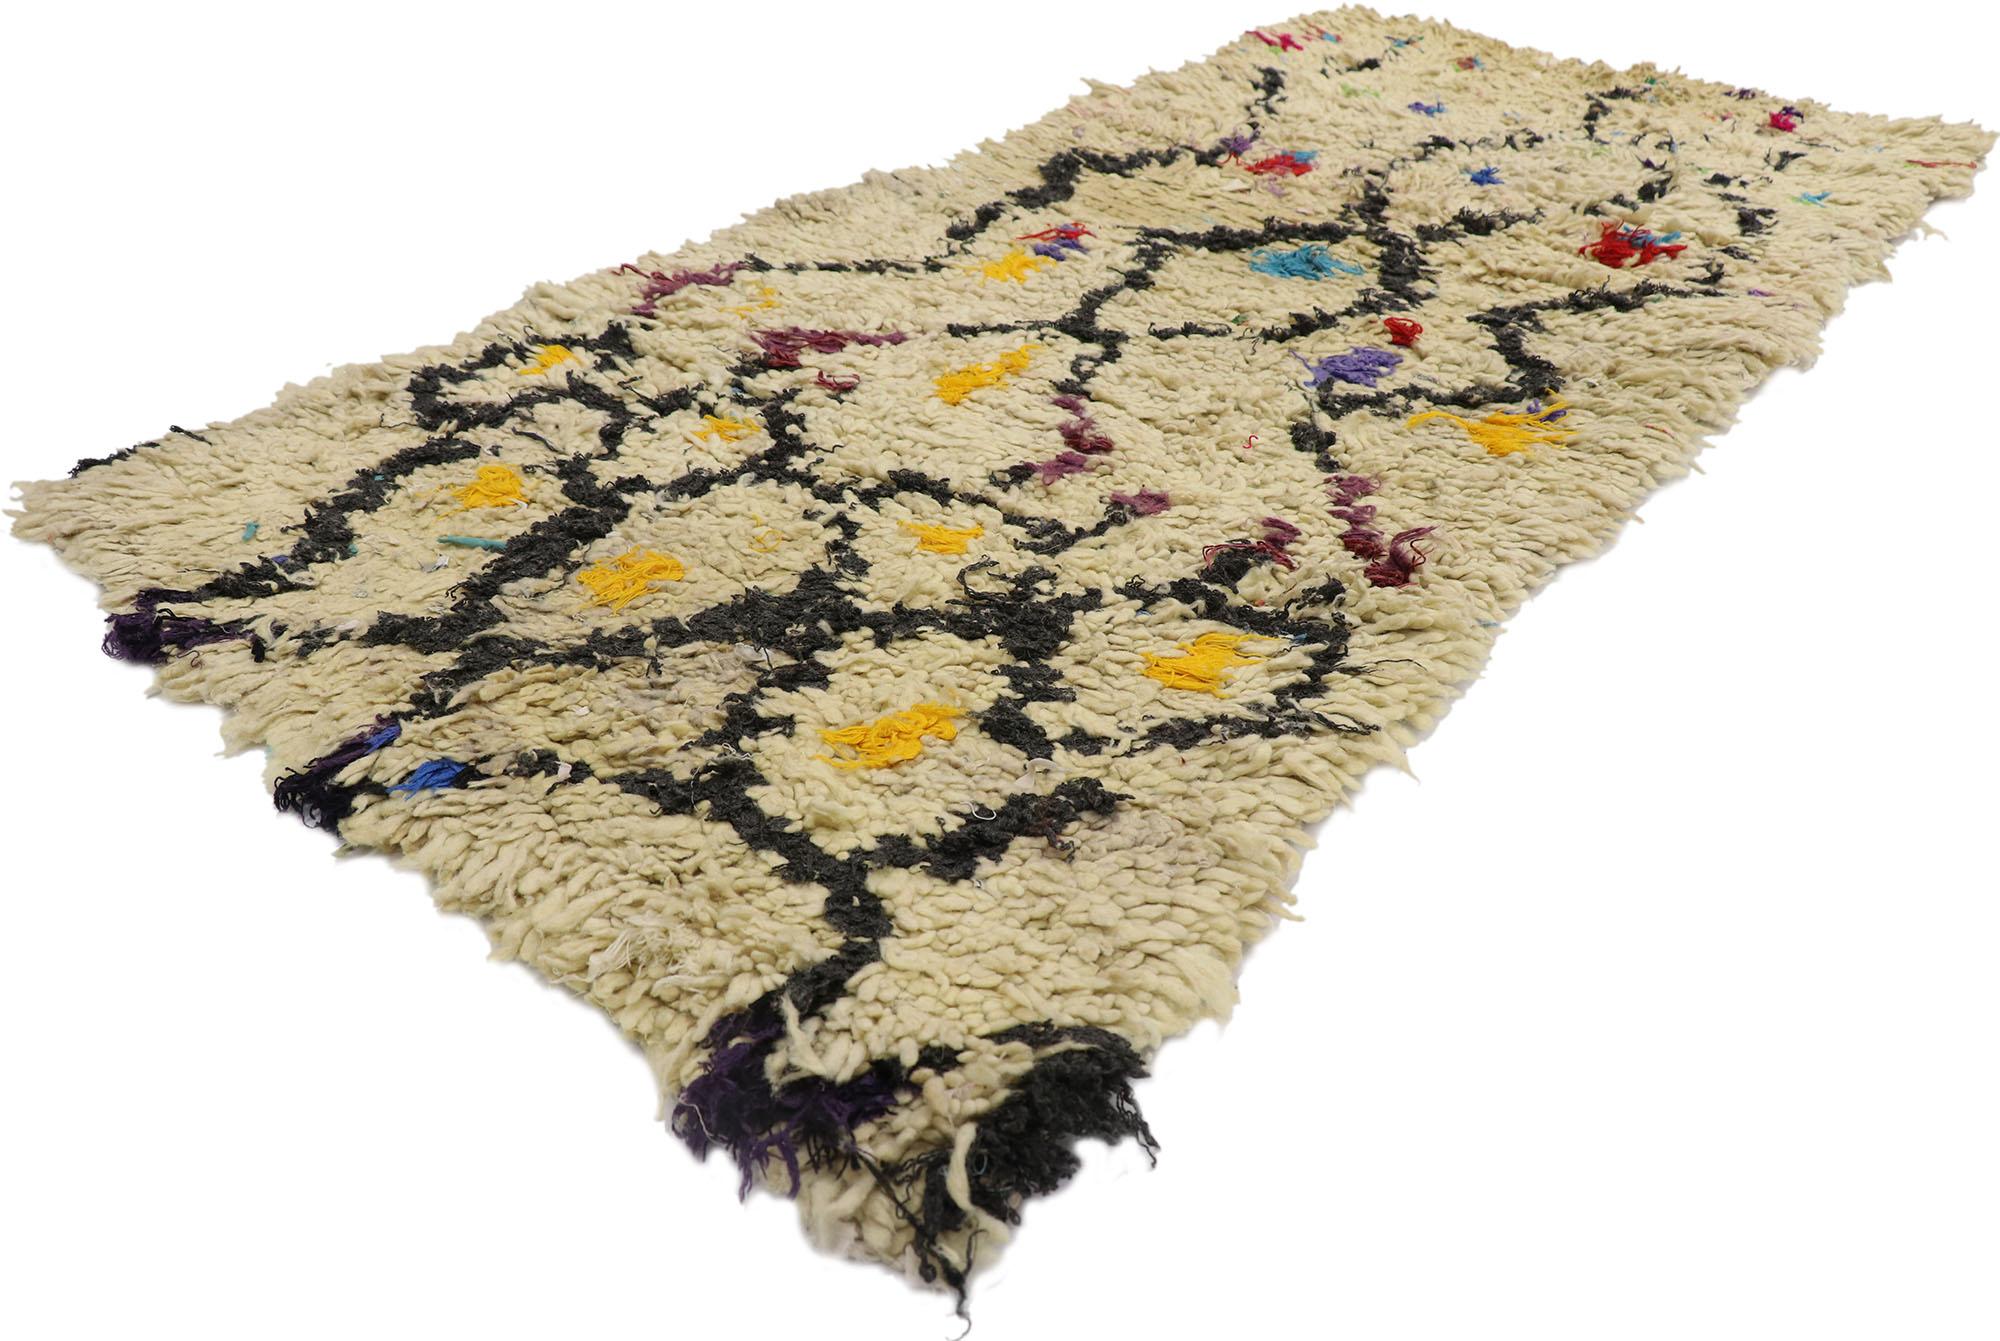 21594 vintage Berber Boucherouite Moroccan rug with Boho Chic Tribal style 02'08 x 05'08. Avec son design expressif et audacieux, ses détails et sa texture incroyables, ce tapis berbère Boucherouite marocain vintage en coton et laine noué à la main